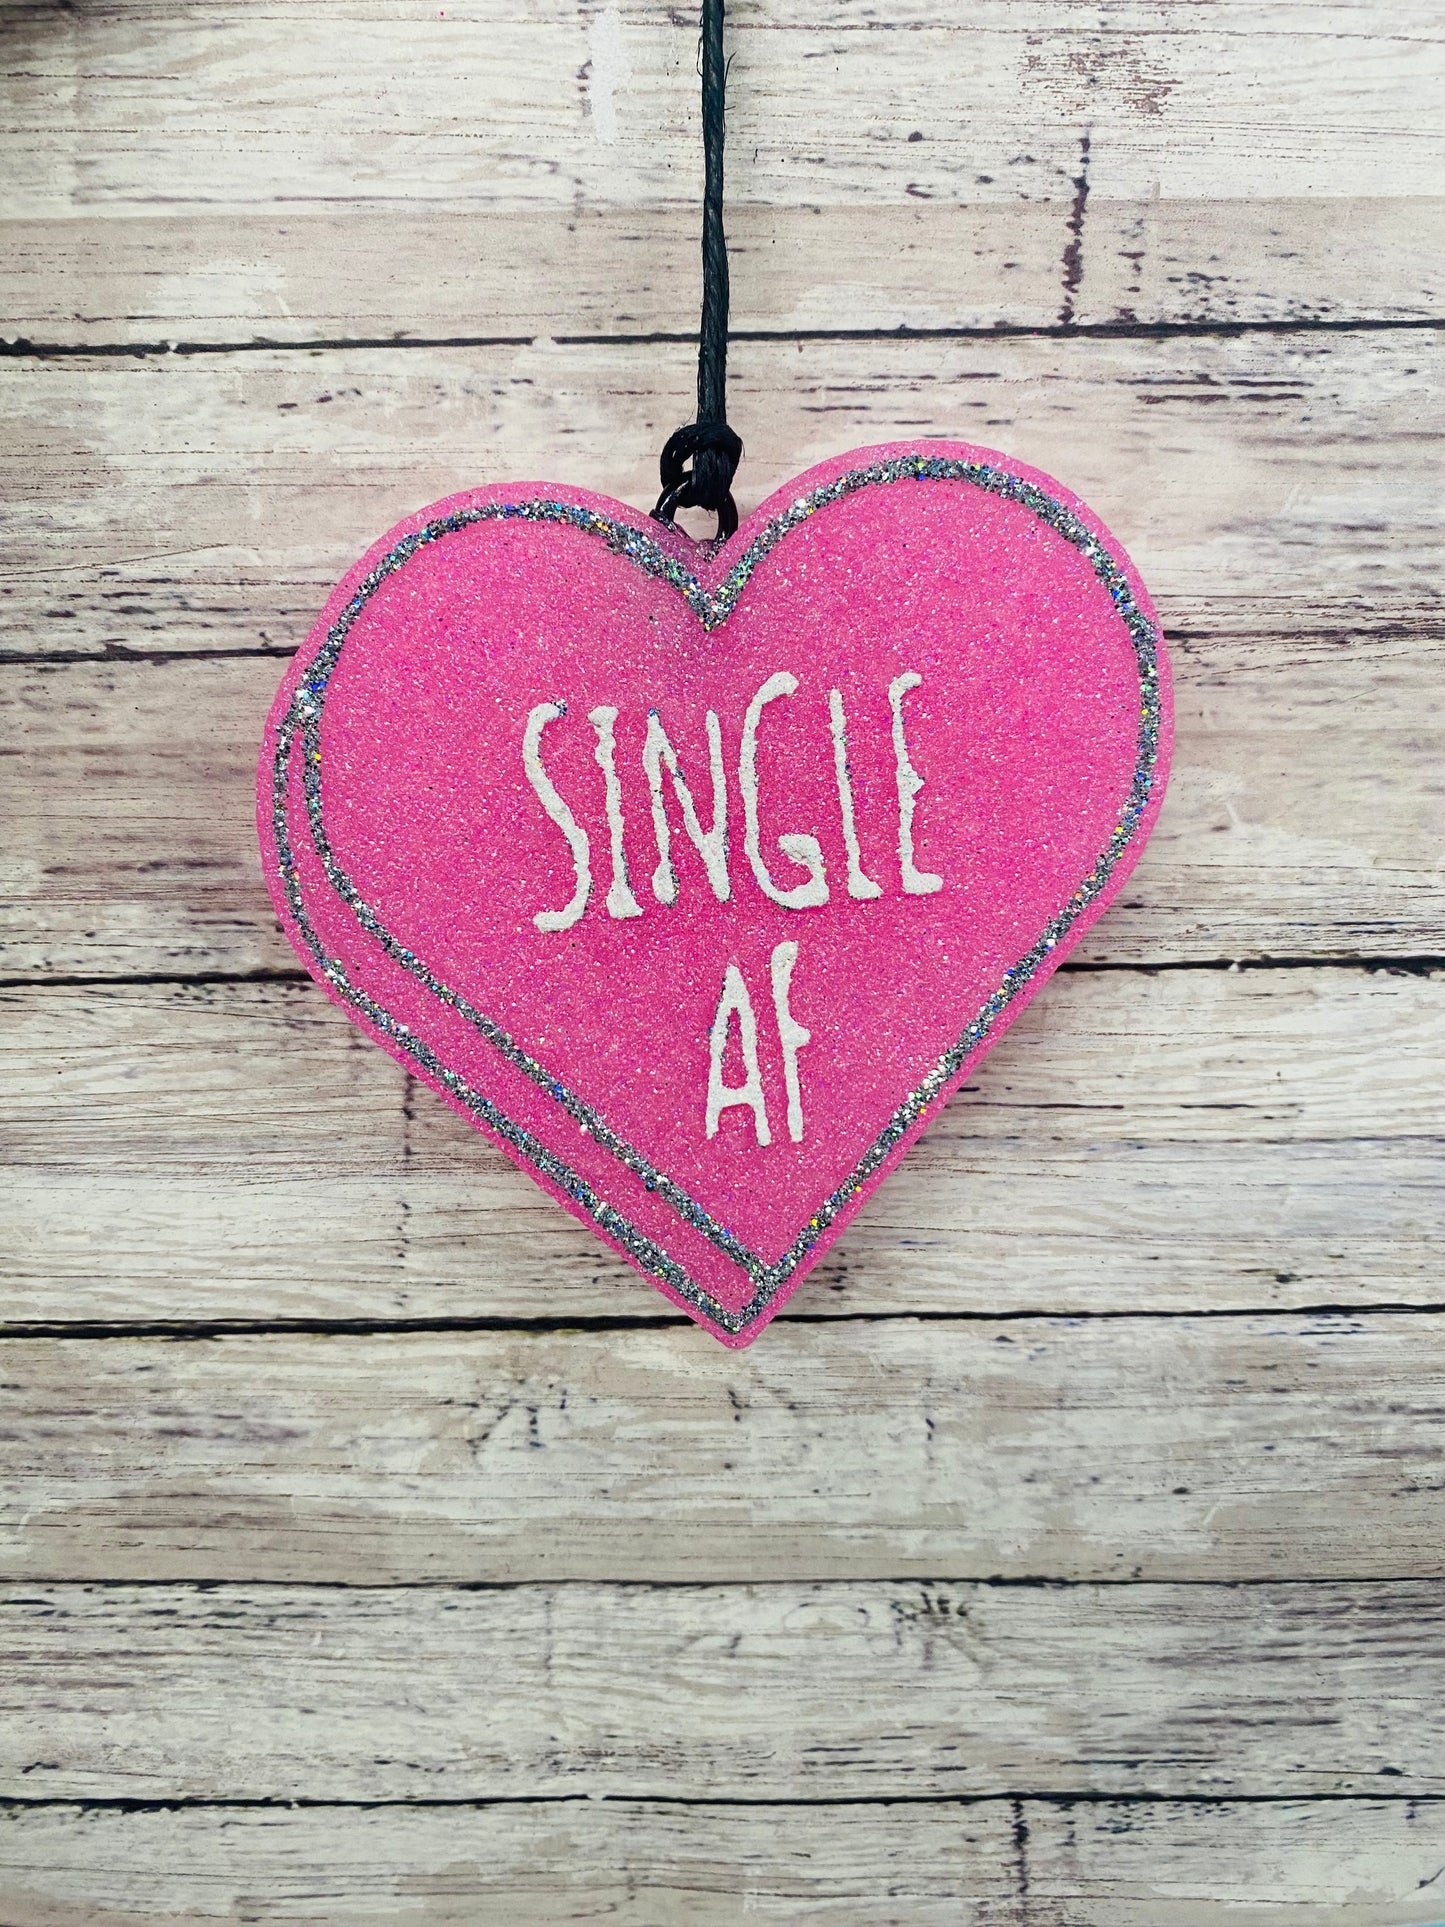 Single AF Heart